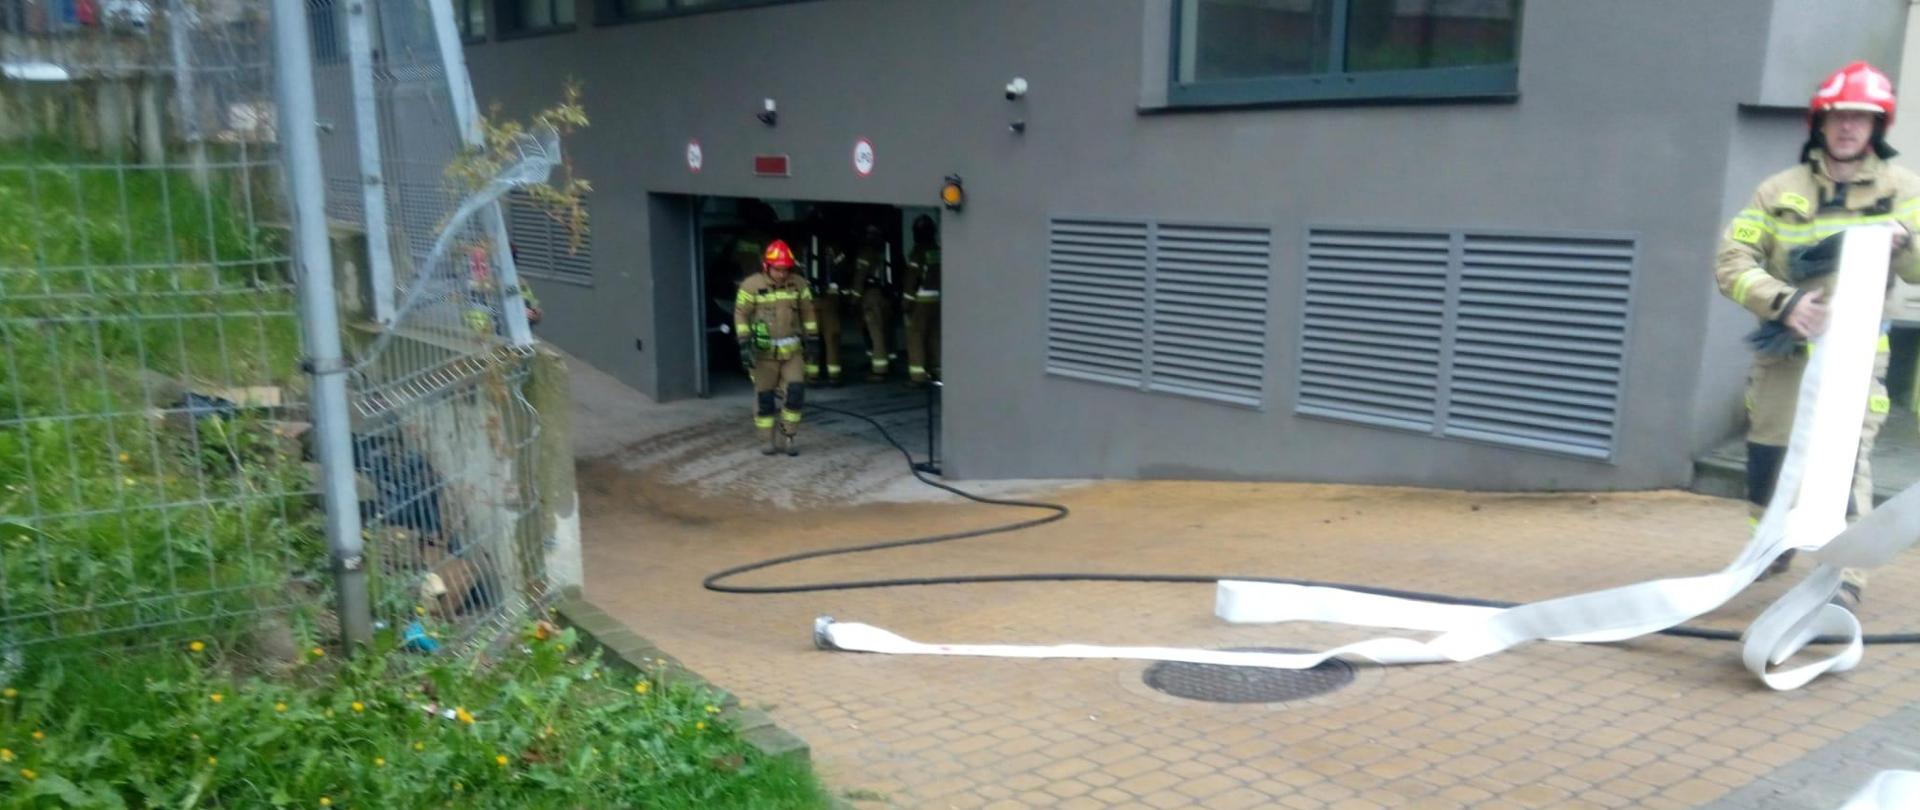 Zdjęcie przedstawia wjazd do garażu podziemnego w budynku przy ulicy Seminaryjskiej w Kielcach gdzie doszło do pożaru. Ratownicy zwijają węże gaśnicze oraz znajdują się wewnątrz obiektu. 